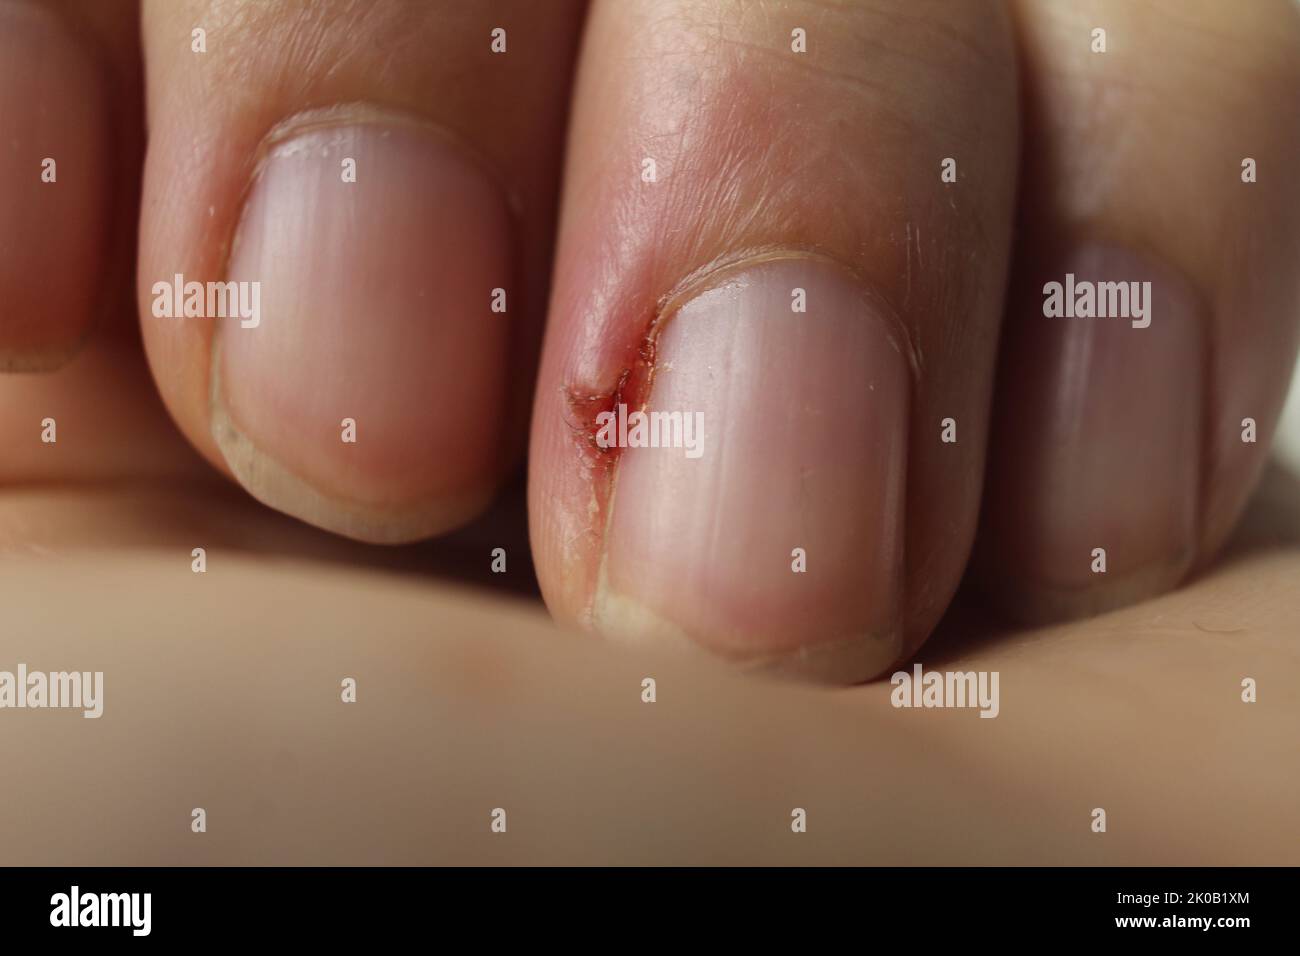 Nail diseases fotografías e imágenes de alta resolución - Alamy